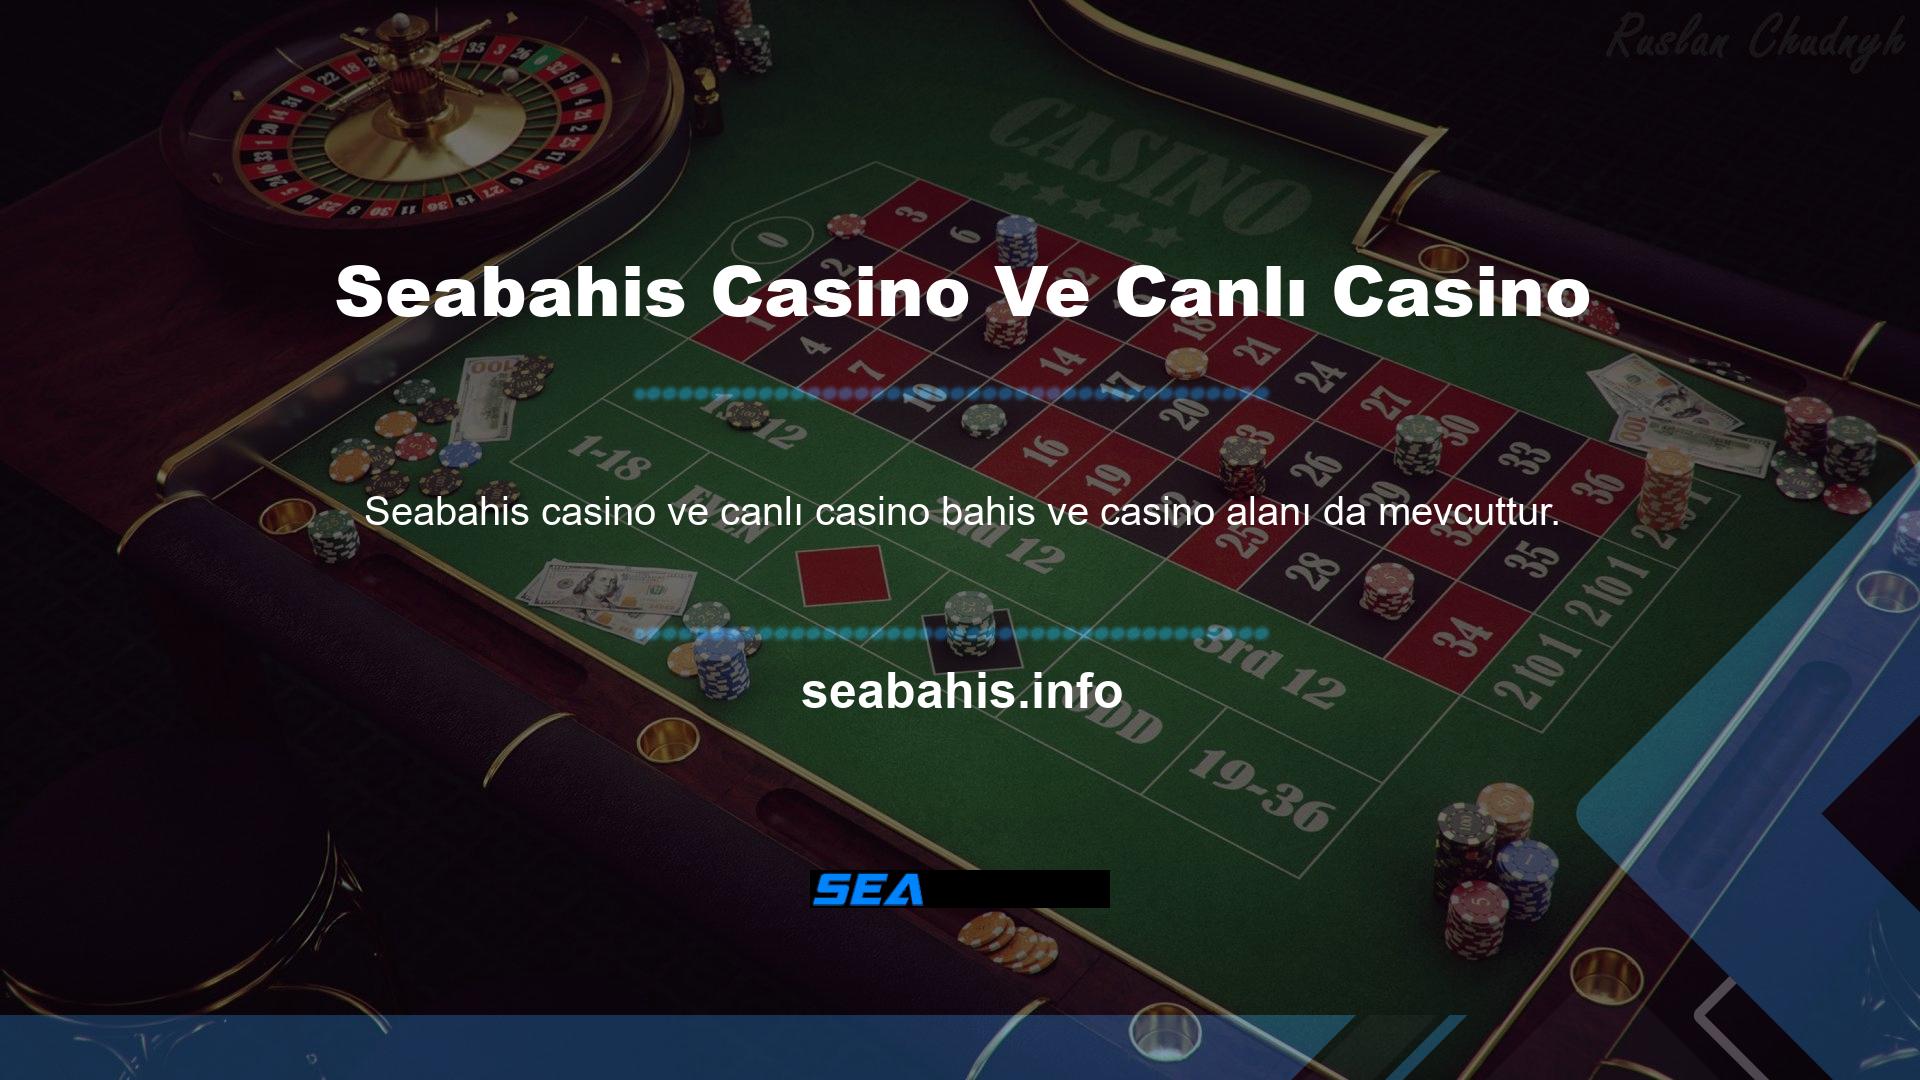 İsteyen bireyler Pokerde ellerini denemek isteyenler, farklı oyunlar oynayabilecekleri ve seçtikleri çevrimiçi poker masasına oturabilecekleri casino bölümünü ziyaret edebilirler